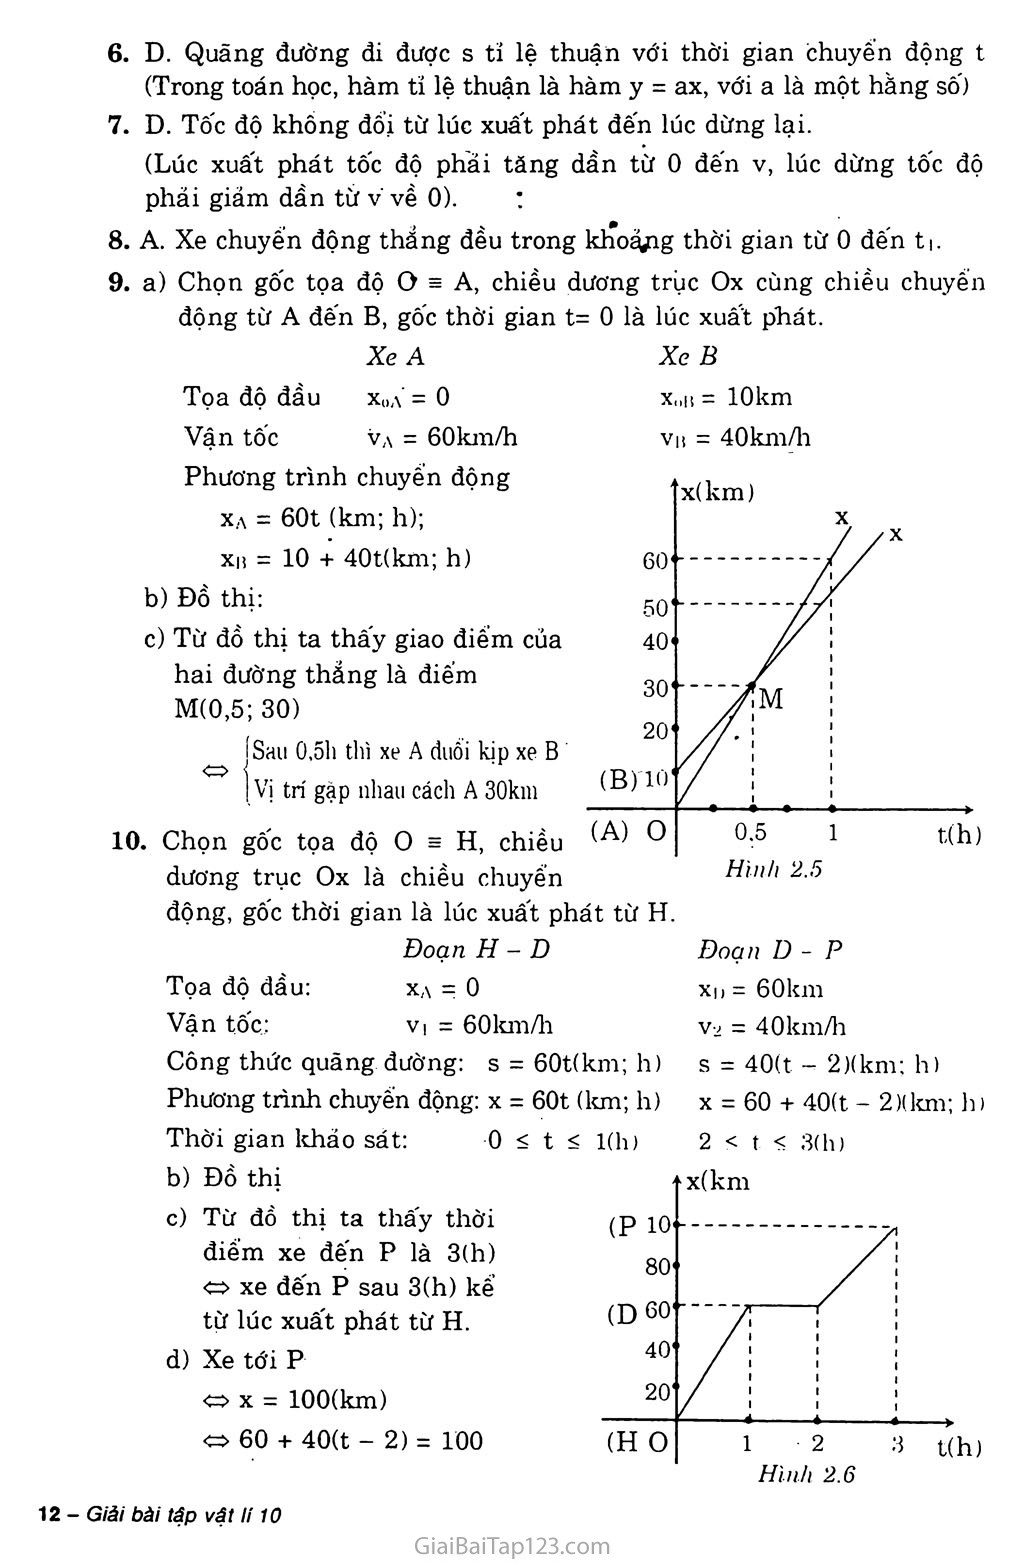 Vật lý lớp 10 Bài 3